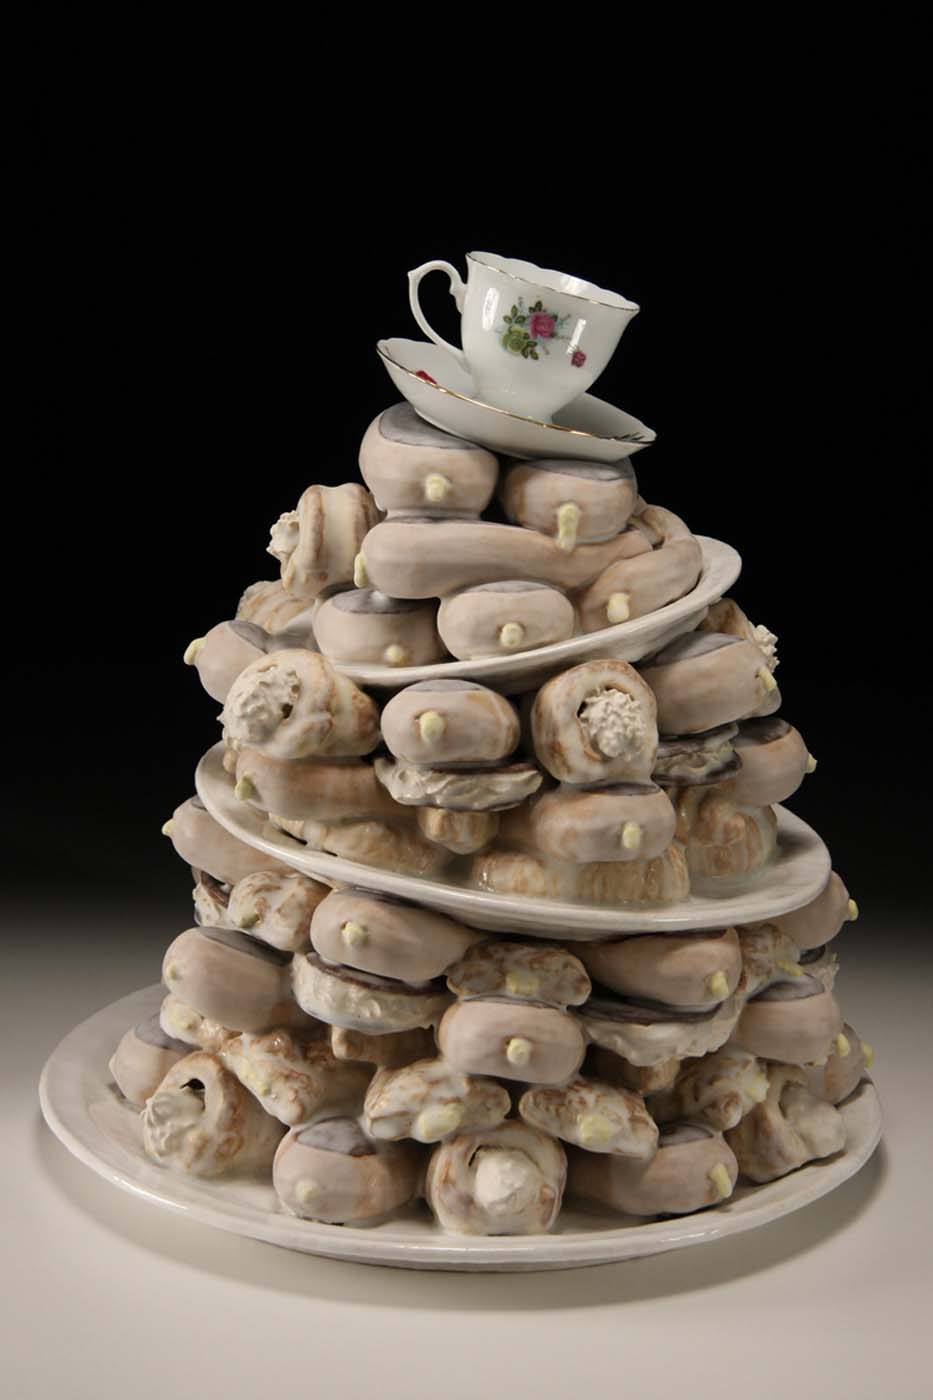 Stagger Cakes Glaze dessert Food Sculpture by artist Dirk Staschke